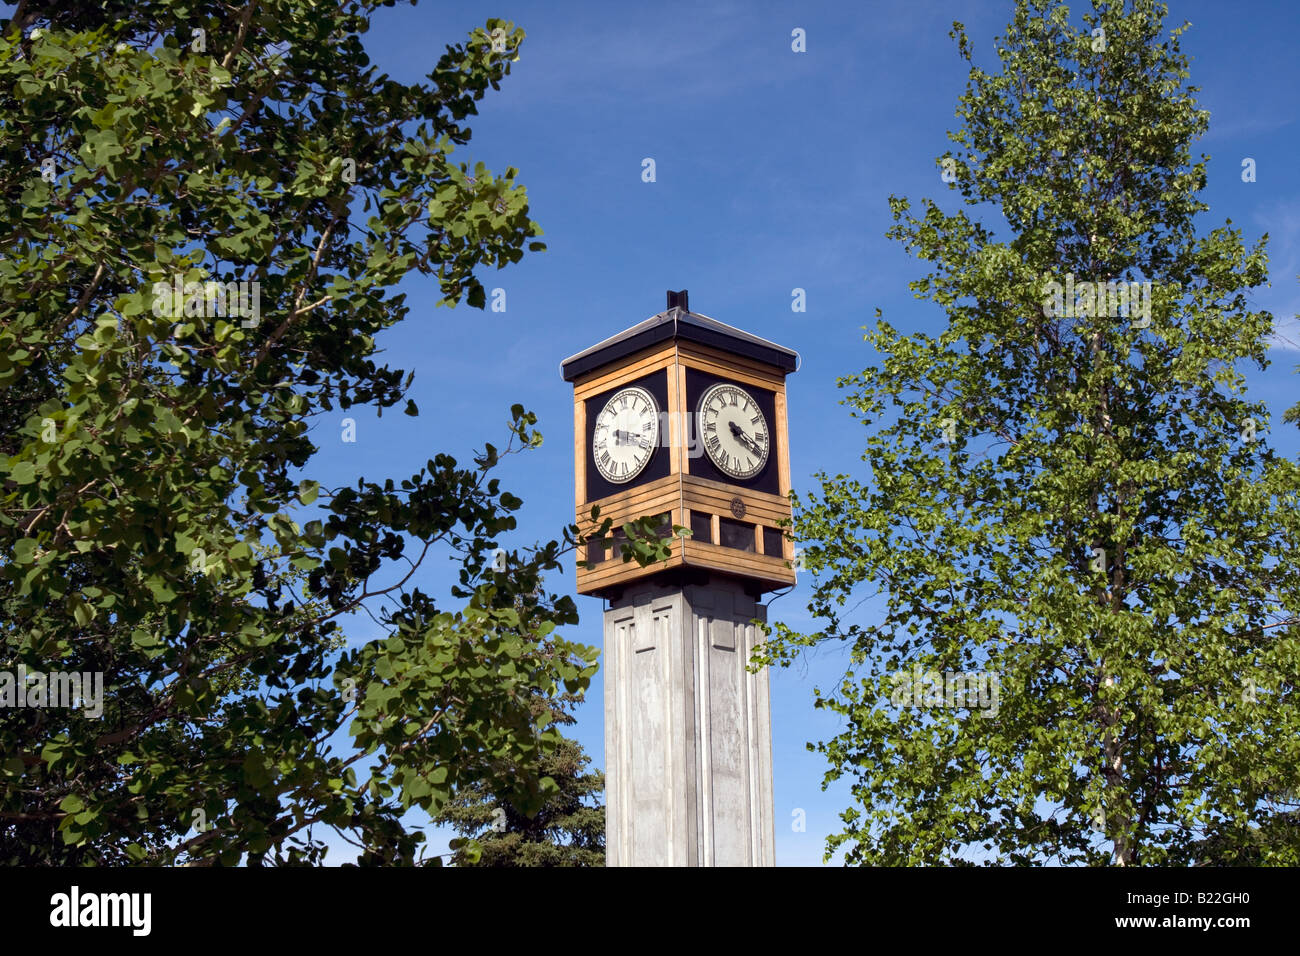 Fairbanks Rotary cinquantesimo anniversario orologio/Carillon all'angolo sud-est del cuore d'Oro Plaza a Fairbanks, Alaska, STATI UNITI D'AMERICA Foto Stock